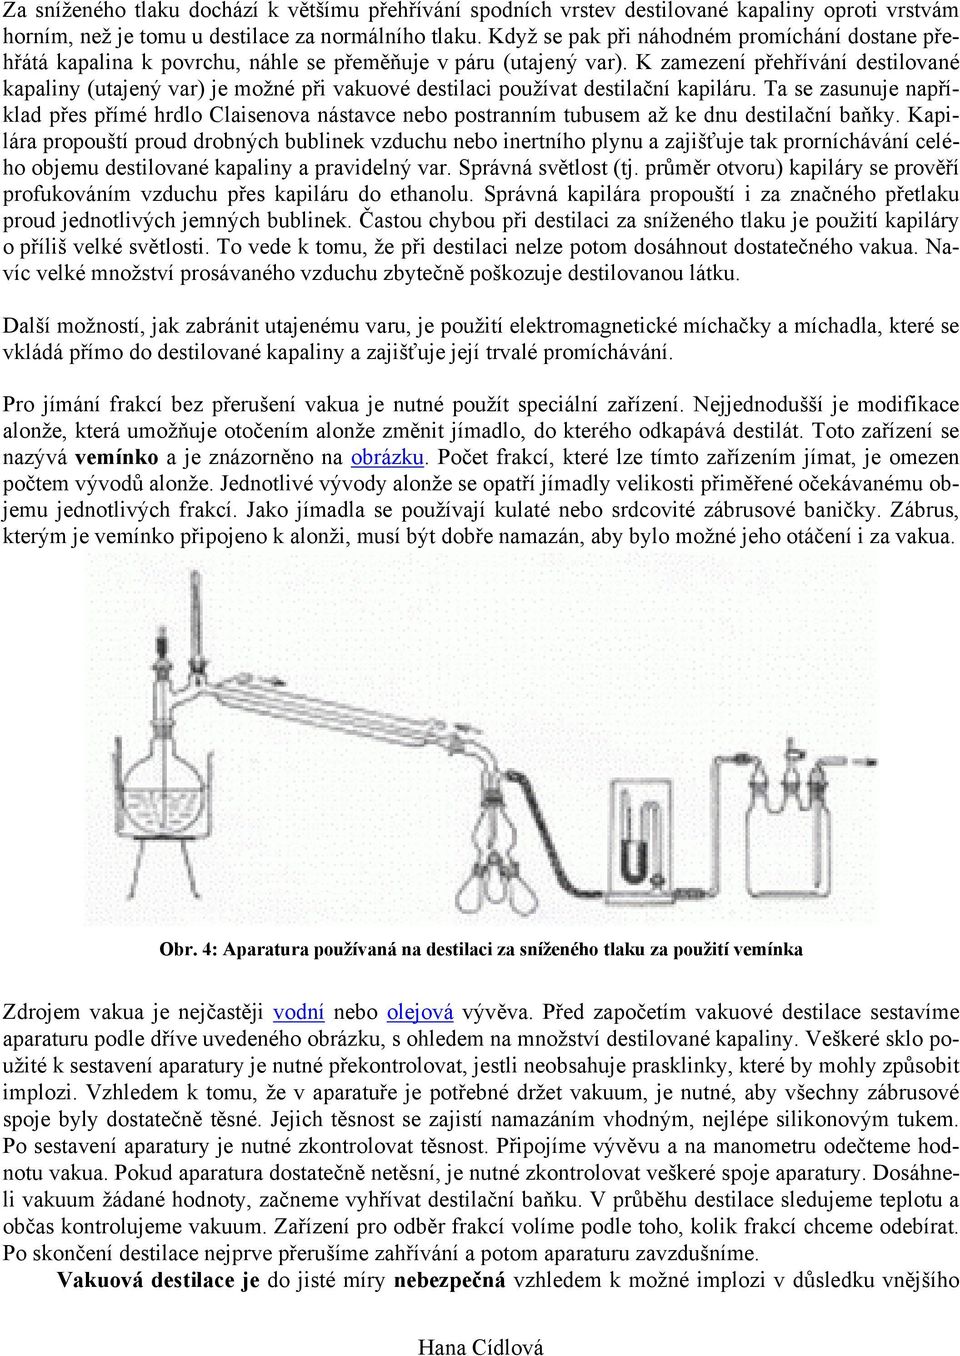 K zamezení přehřívání destilované kapaliny (utajený var) je možné při vakuové destilaci používat destilační kapiláru.